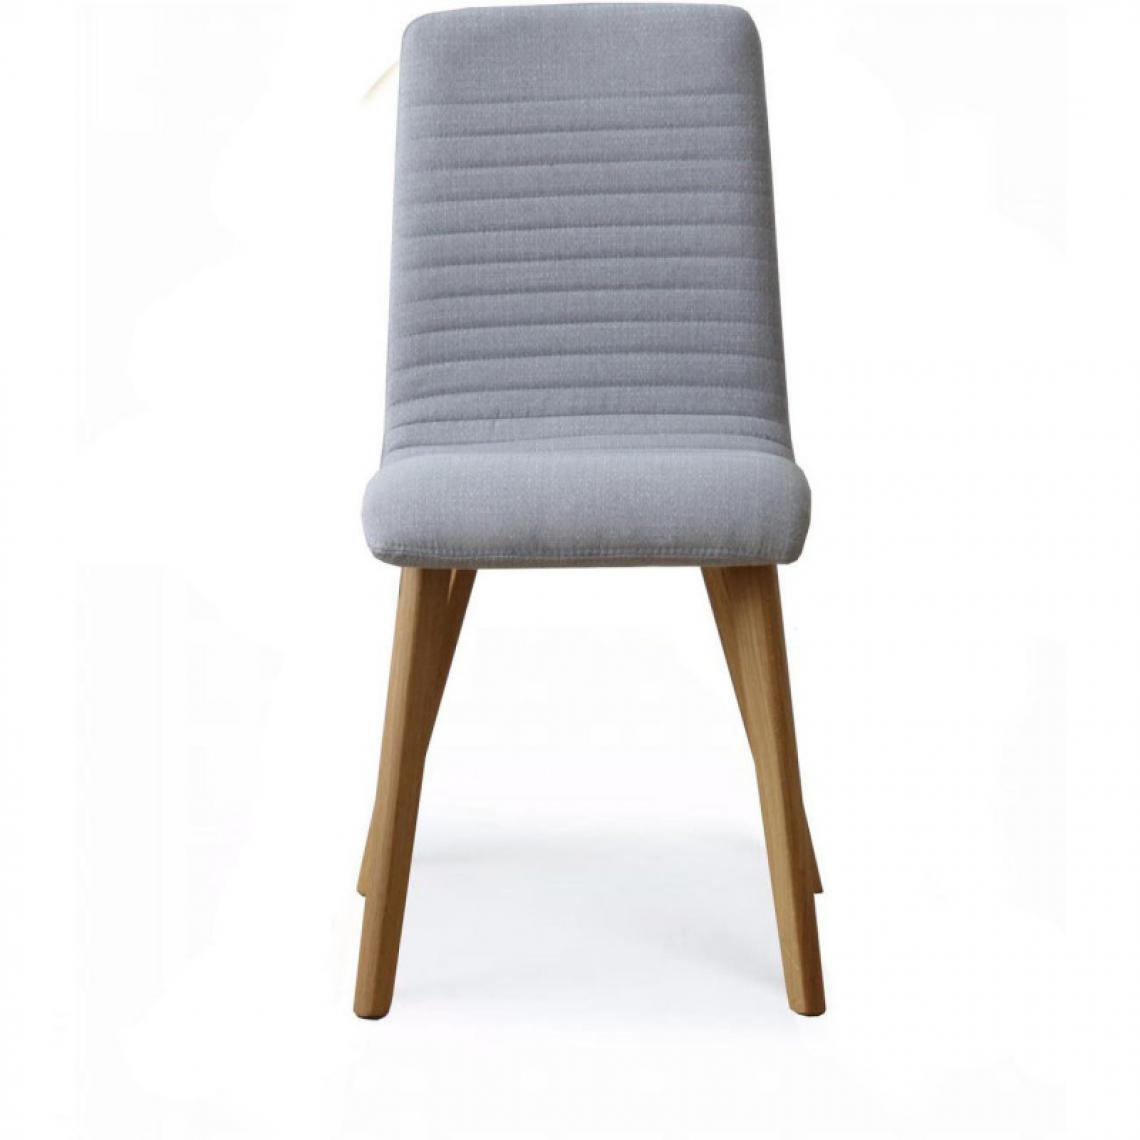 Ac-Deco - Chaise en tissu - L 43 x P 58 x H 89 cm - Gris - Chaises